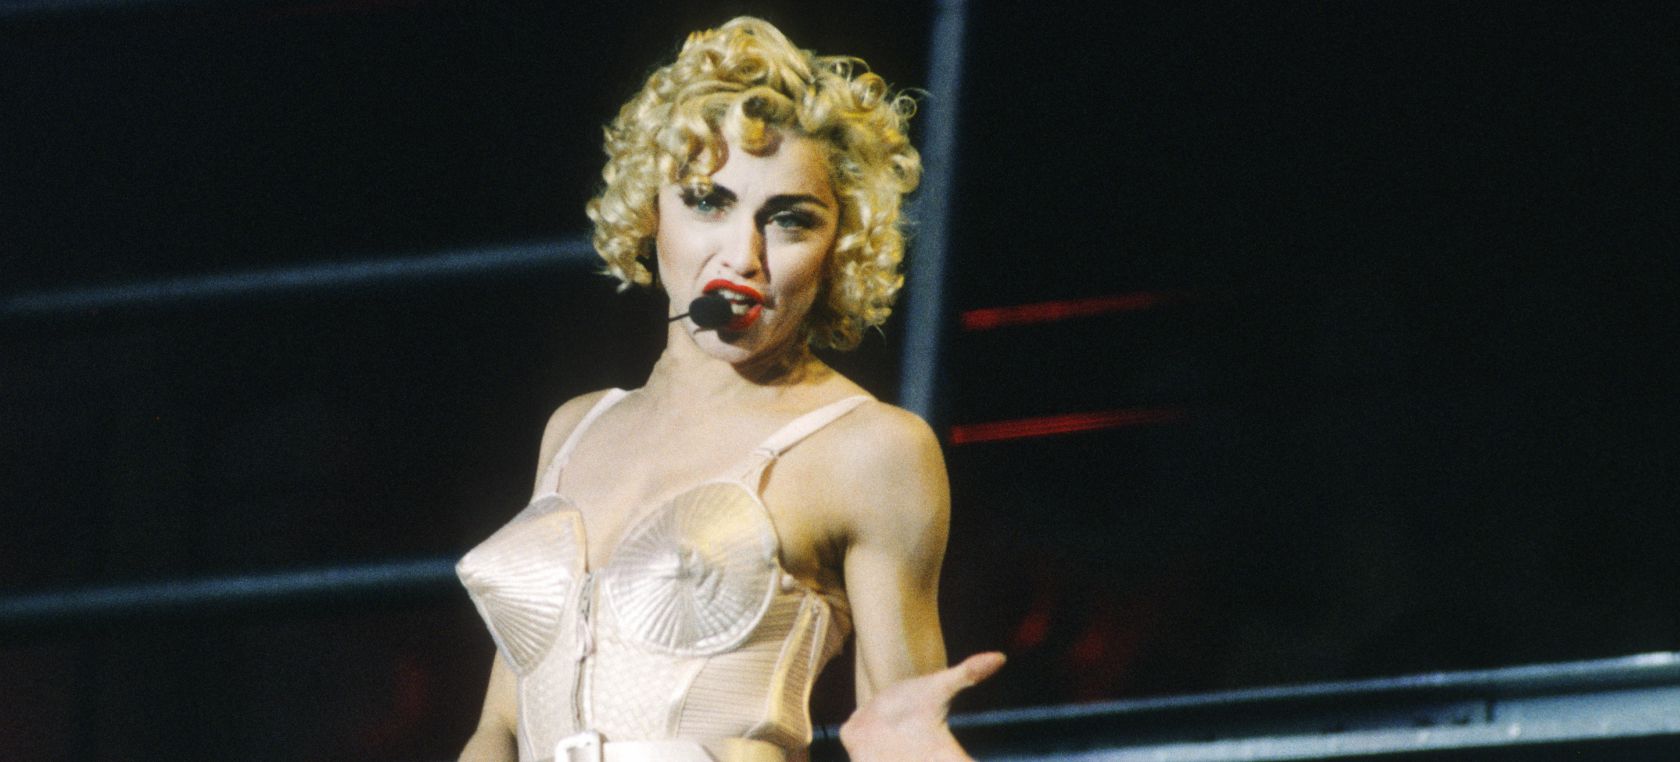 30 años de ‘En la cama con Madonna’, el documental que marcó toda la cultura pop